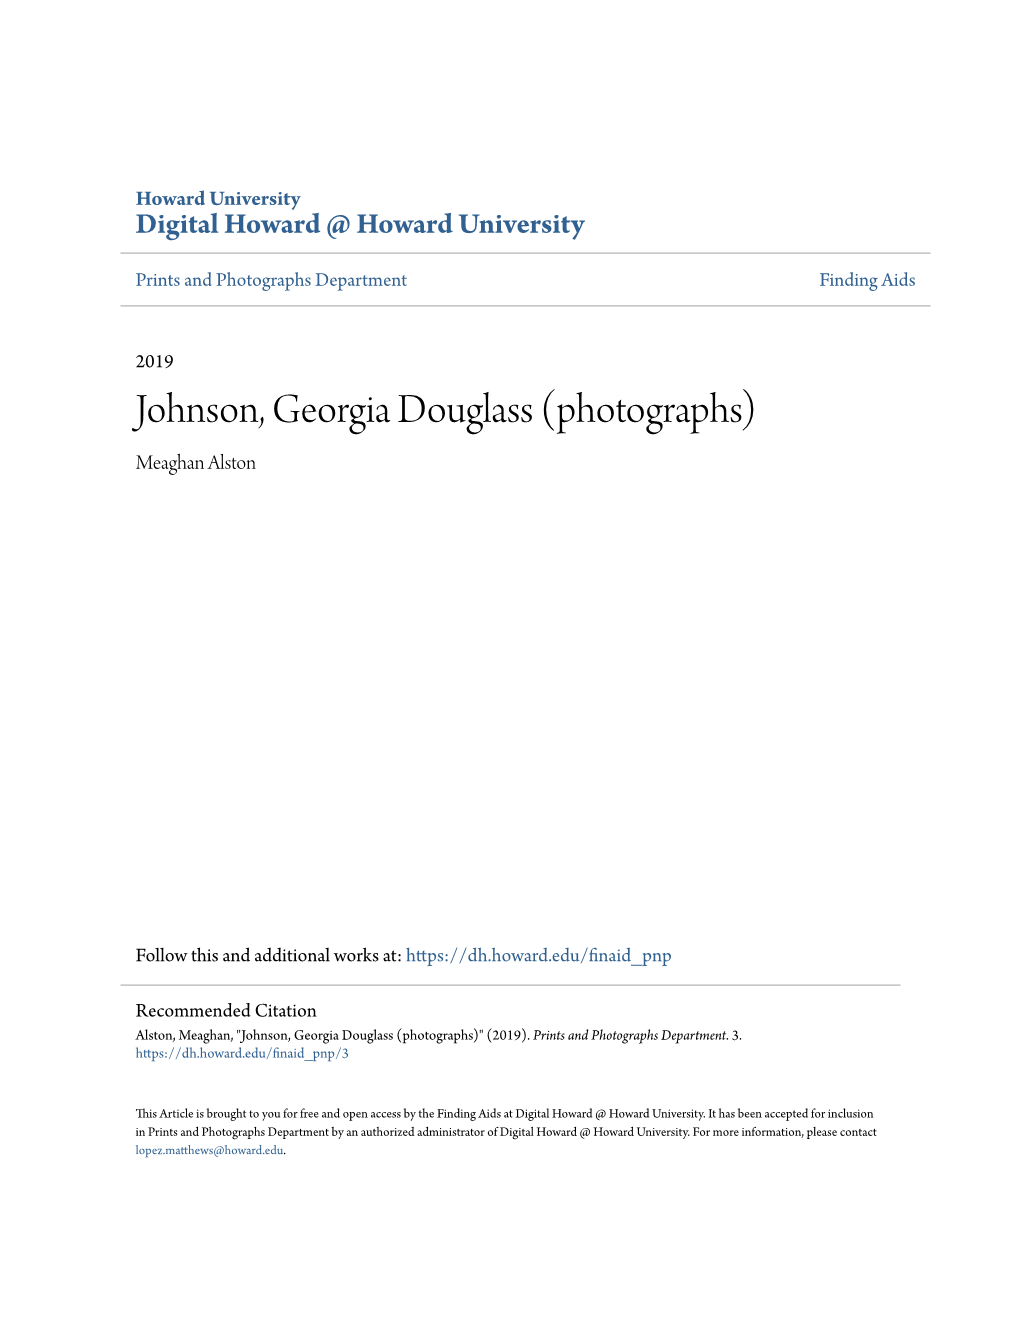 Johnson, Georgia Douglass (Photographs) Meaghan Alston